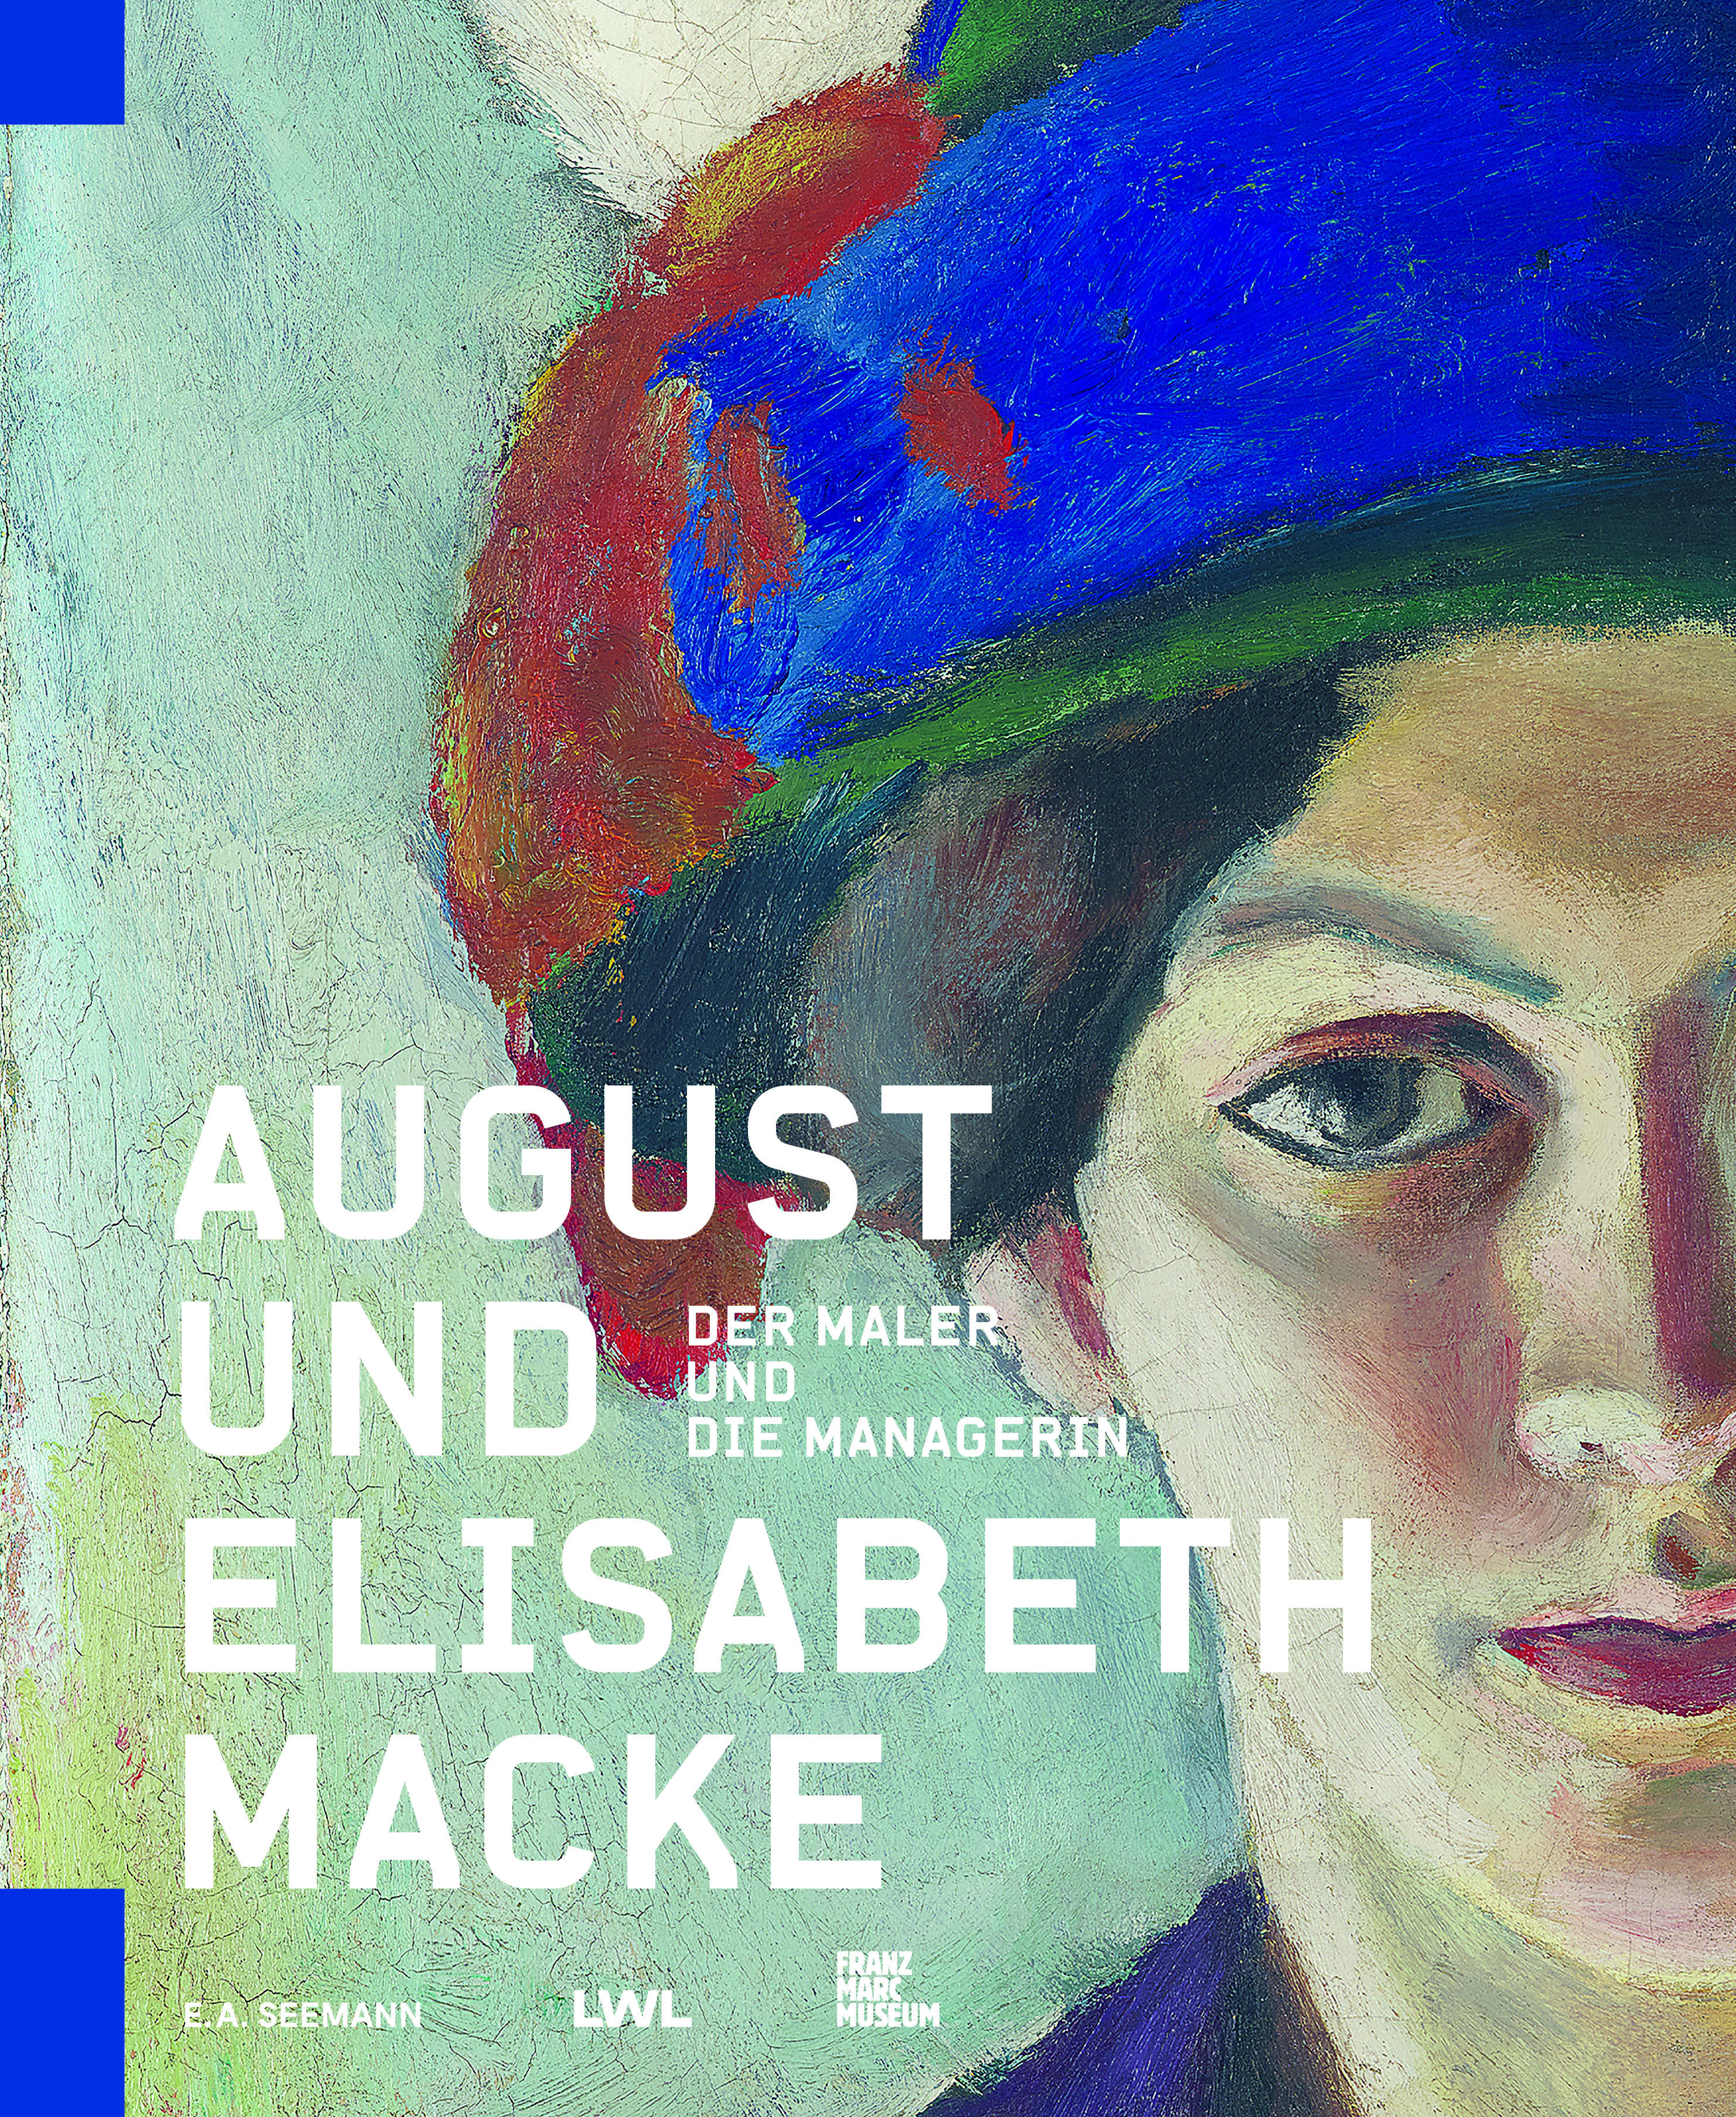 August und Elisabeth Macke